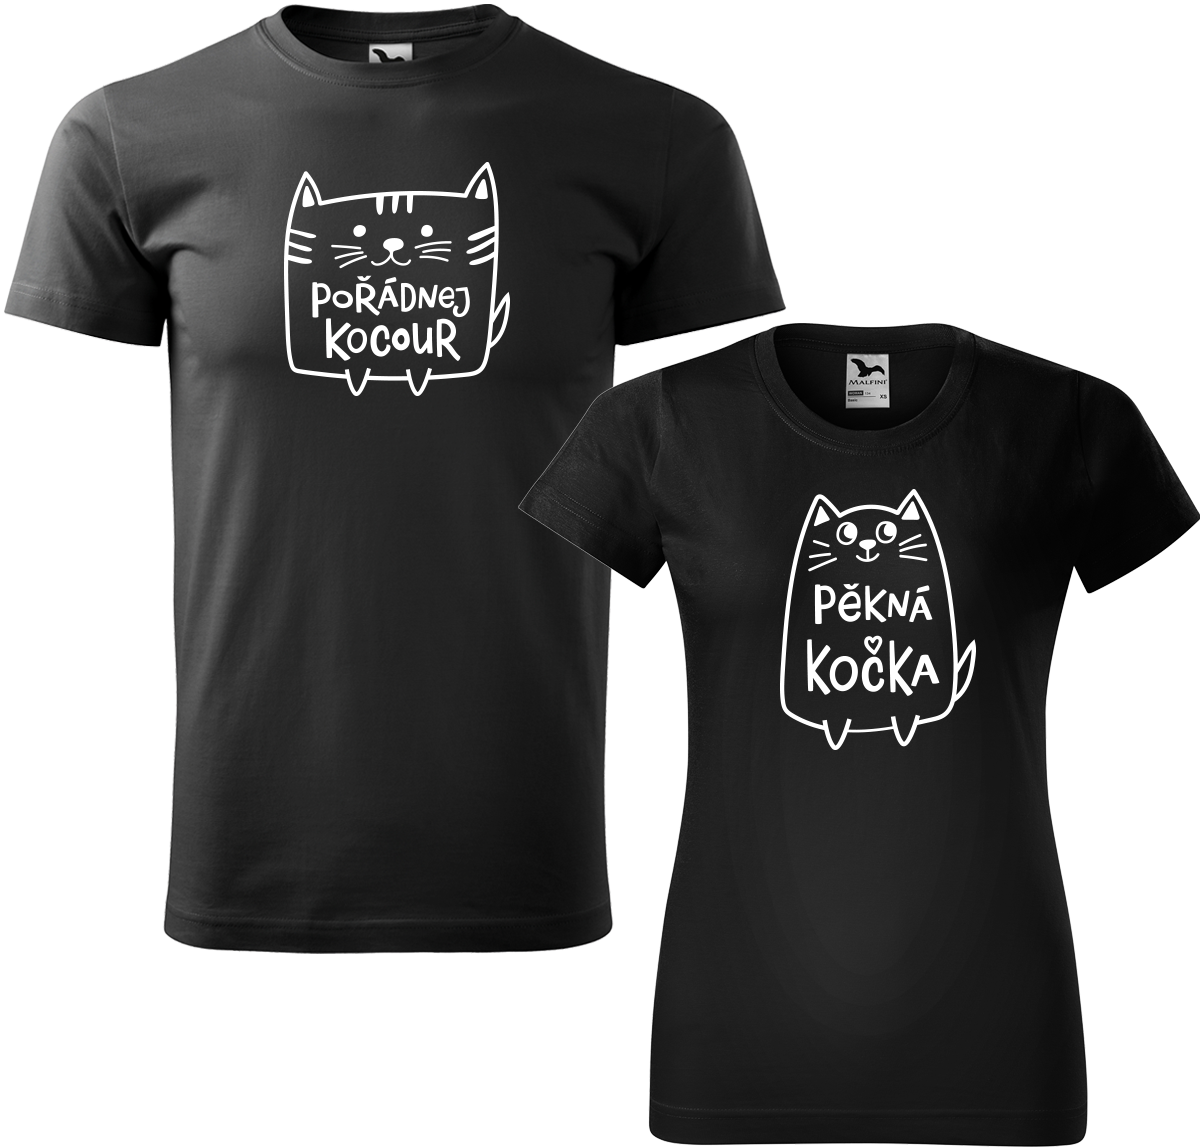 Trička pro páry - Pořádnej kocour a pěkná kočka Barva: Černá (01), Velikost dámské tričko: M, Velikost pánské tričko: M